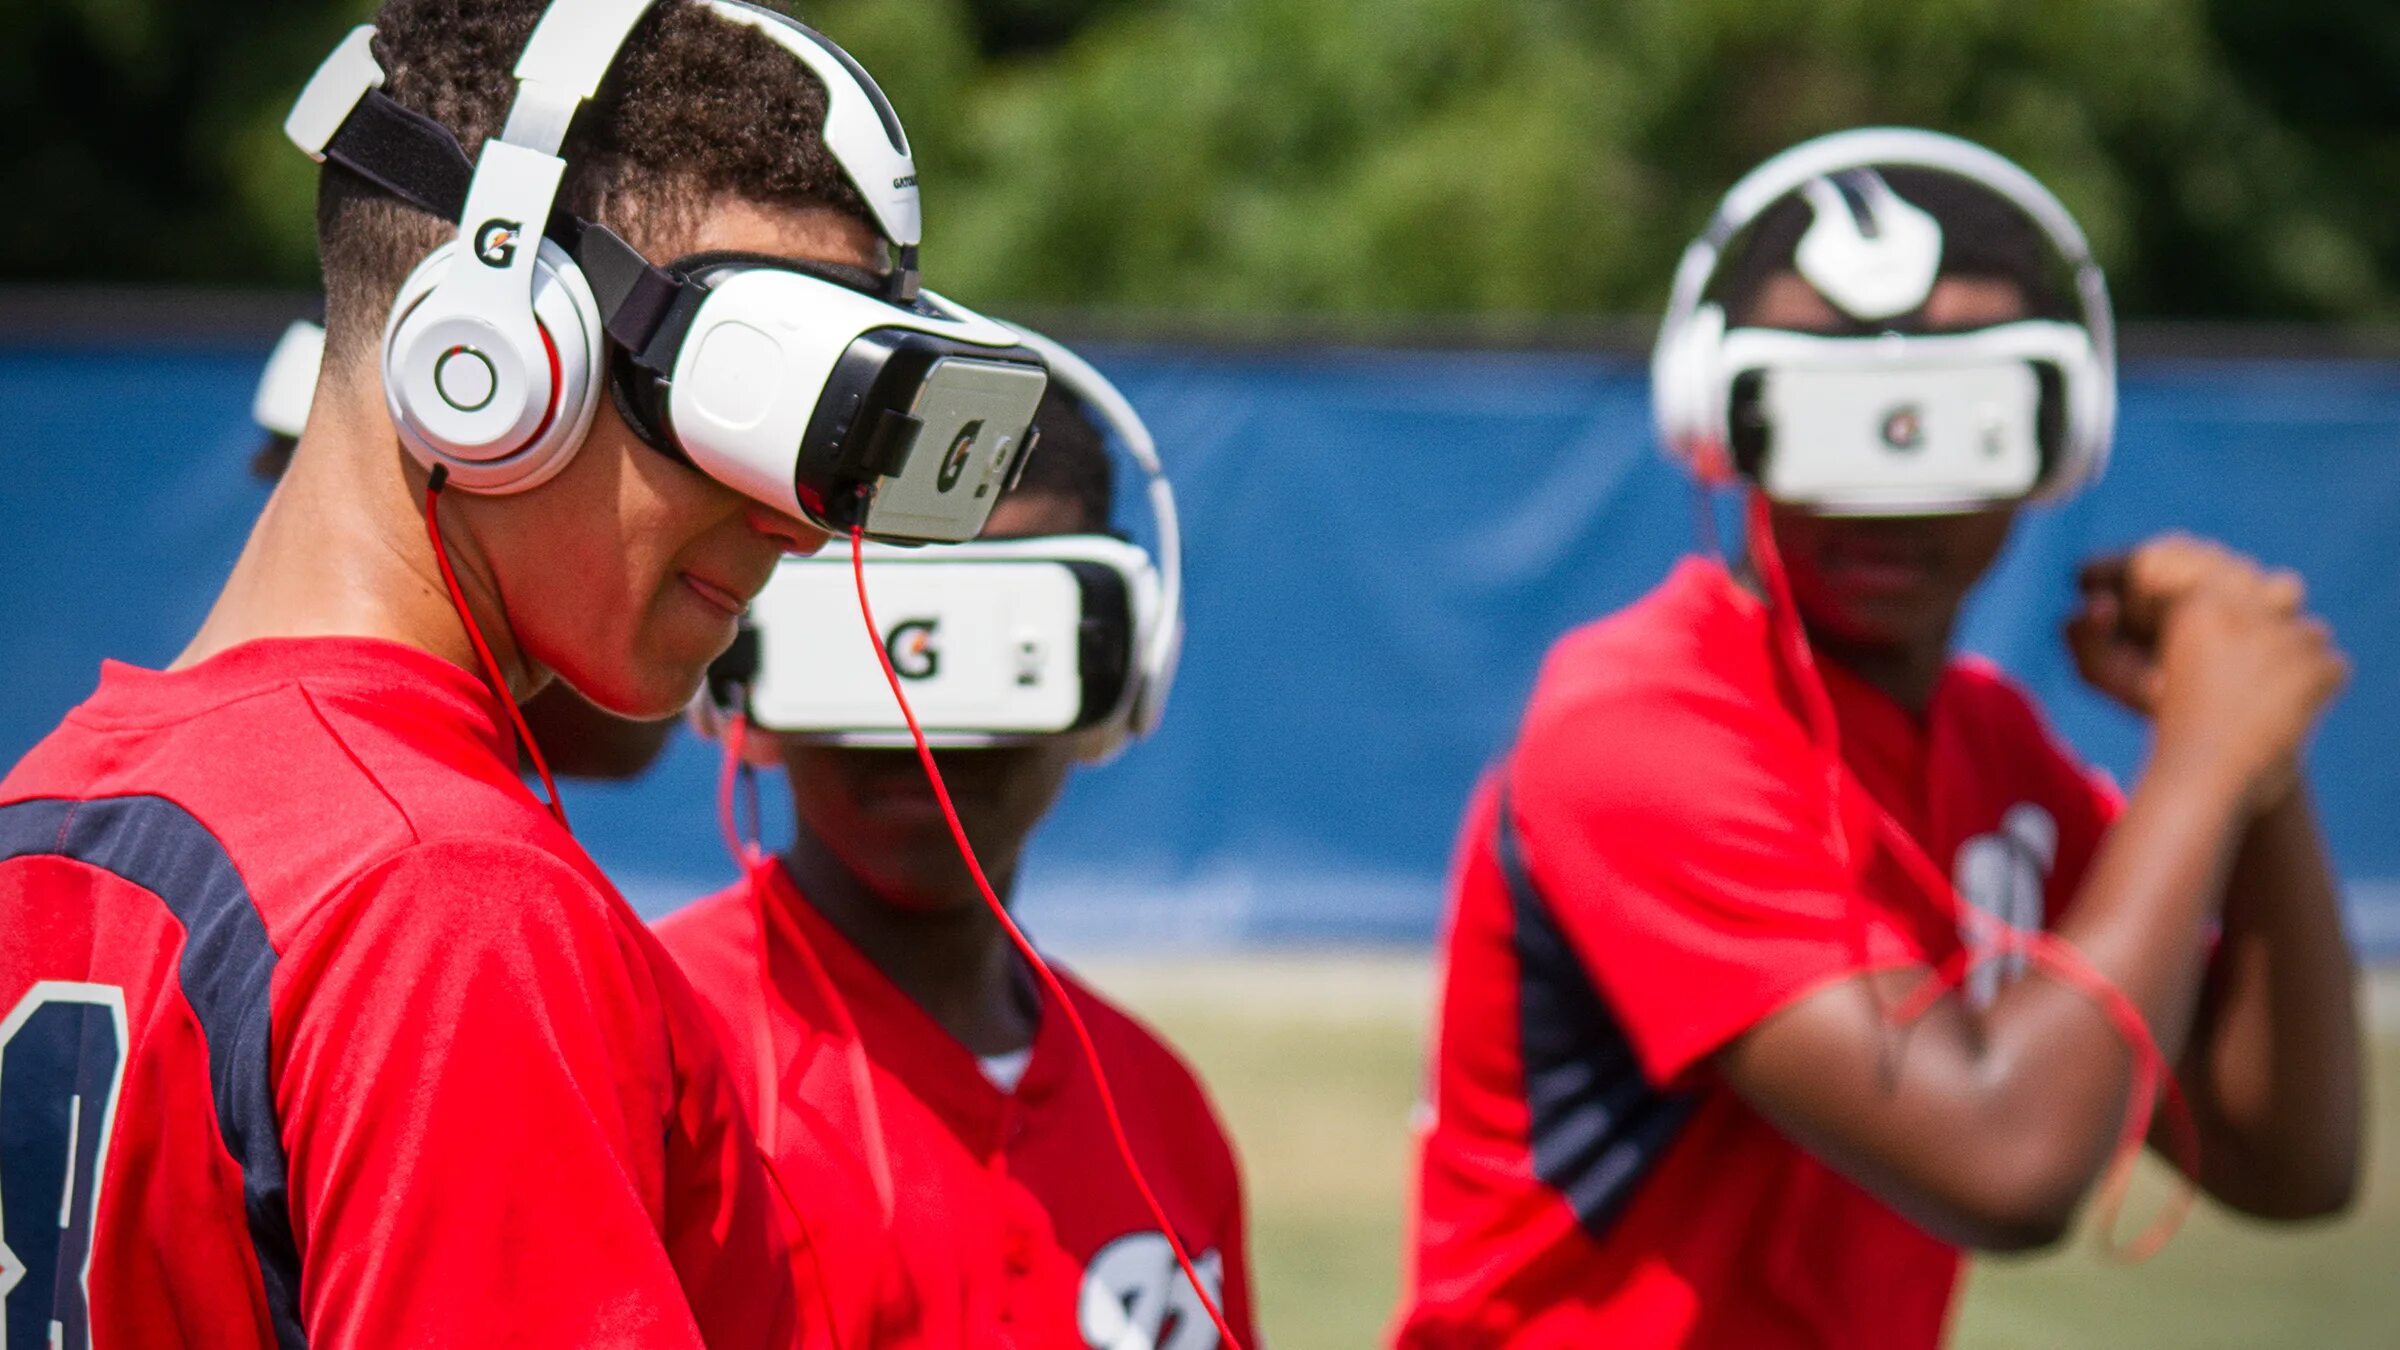 Vr примеры. Виртуальная реальность в спорте. Дополненная реальность в спорте. Спорт в шлемах виртуальной реальности. VR технологии в спорте.